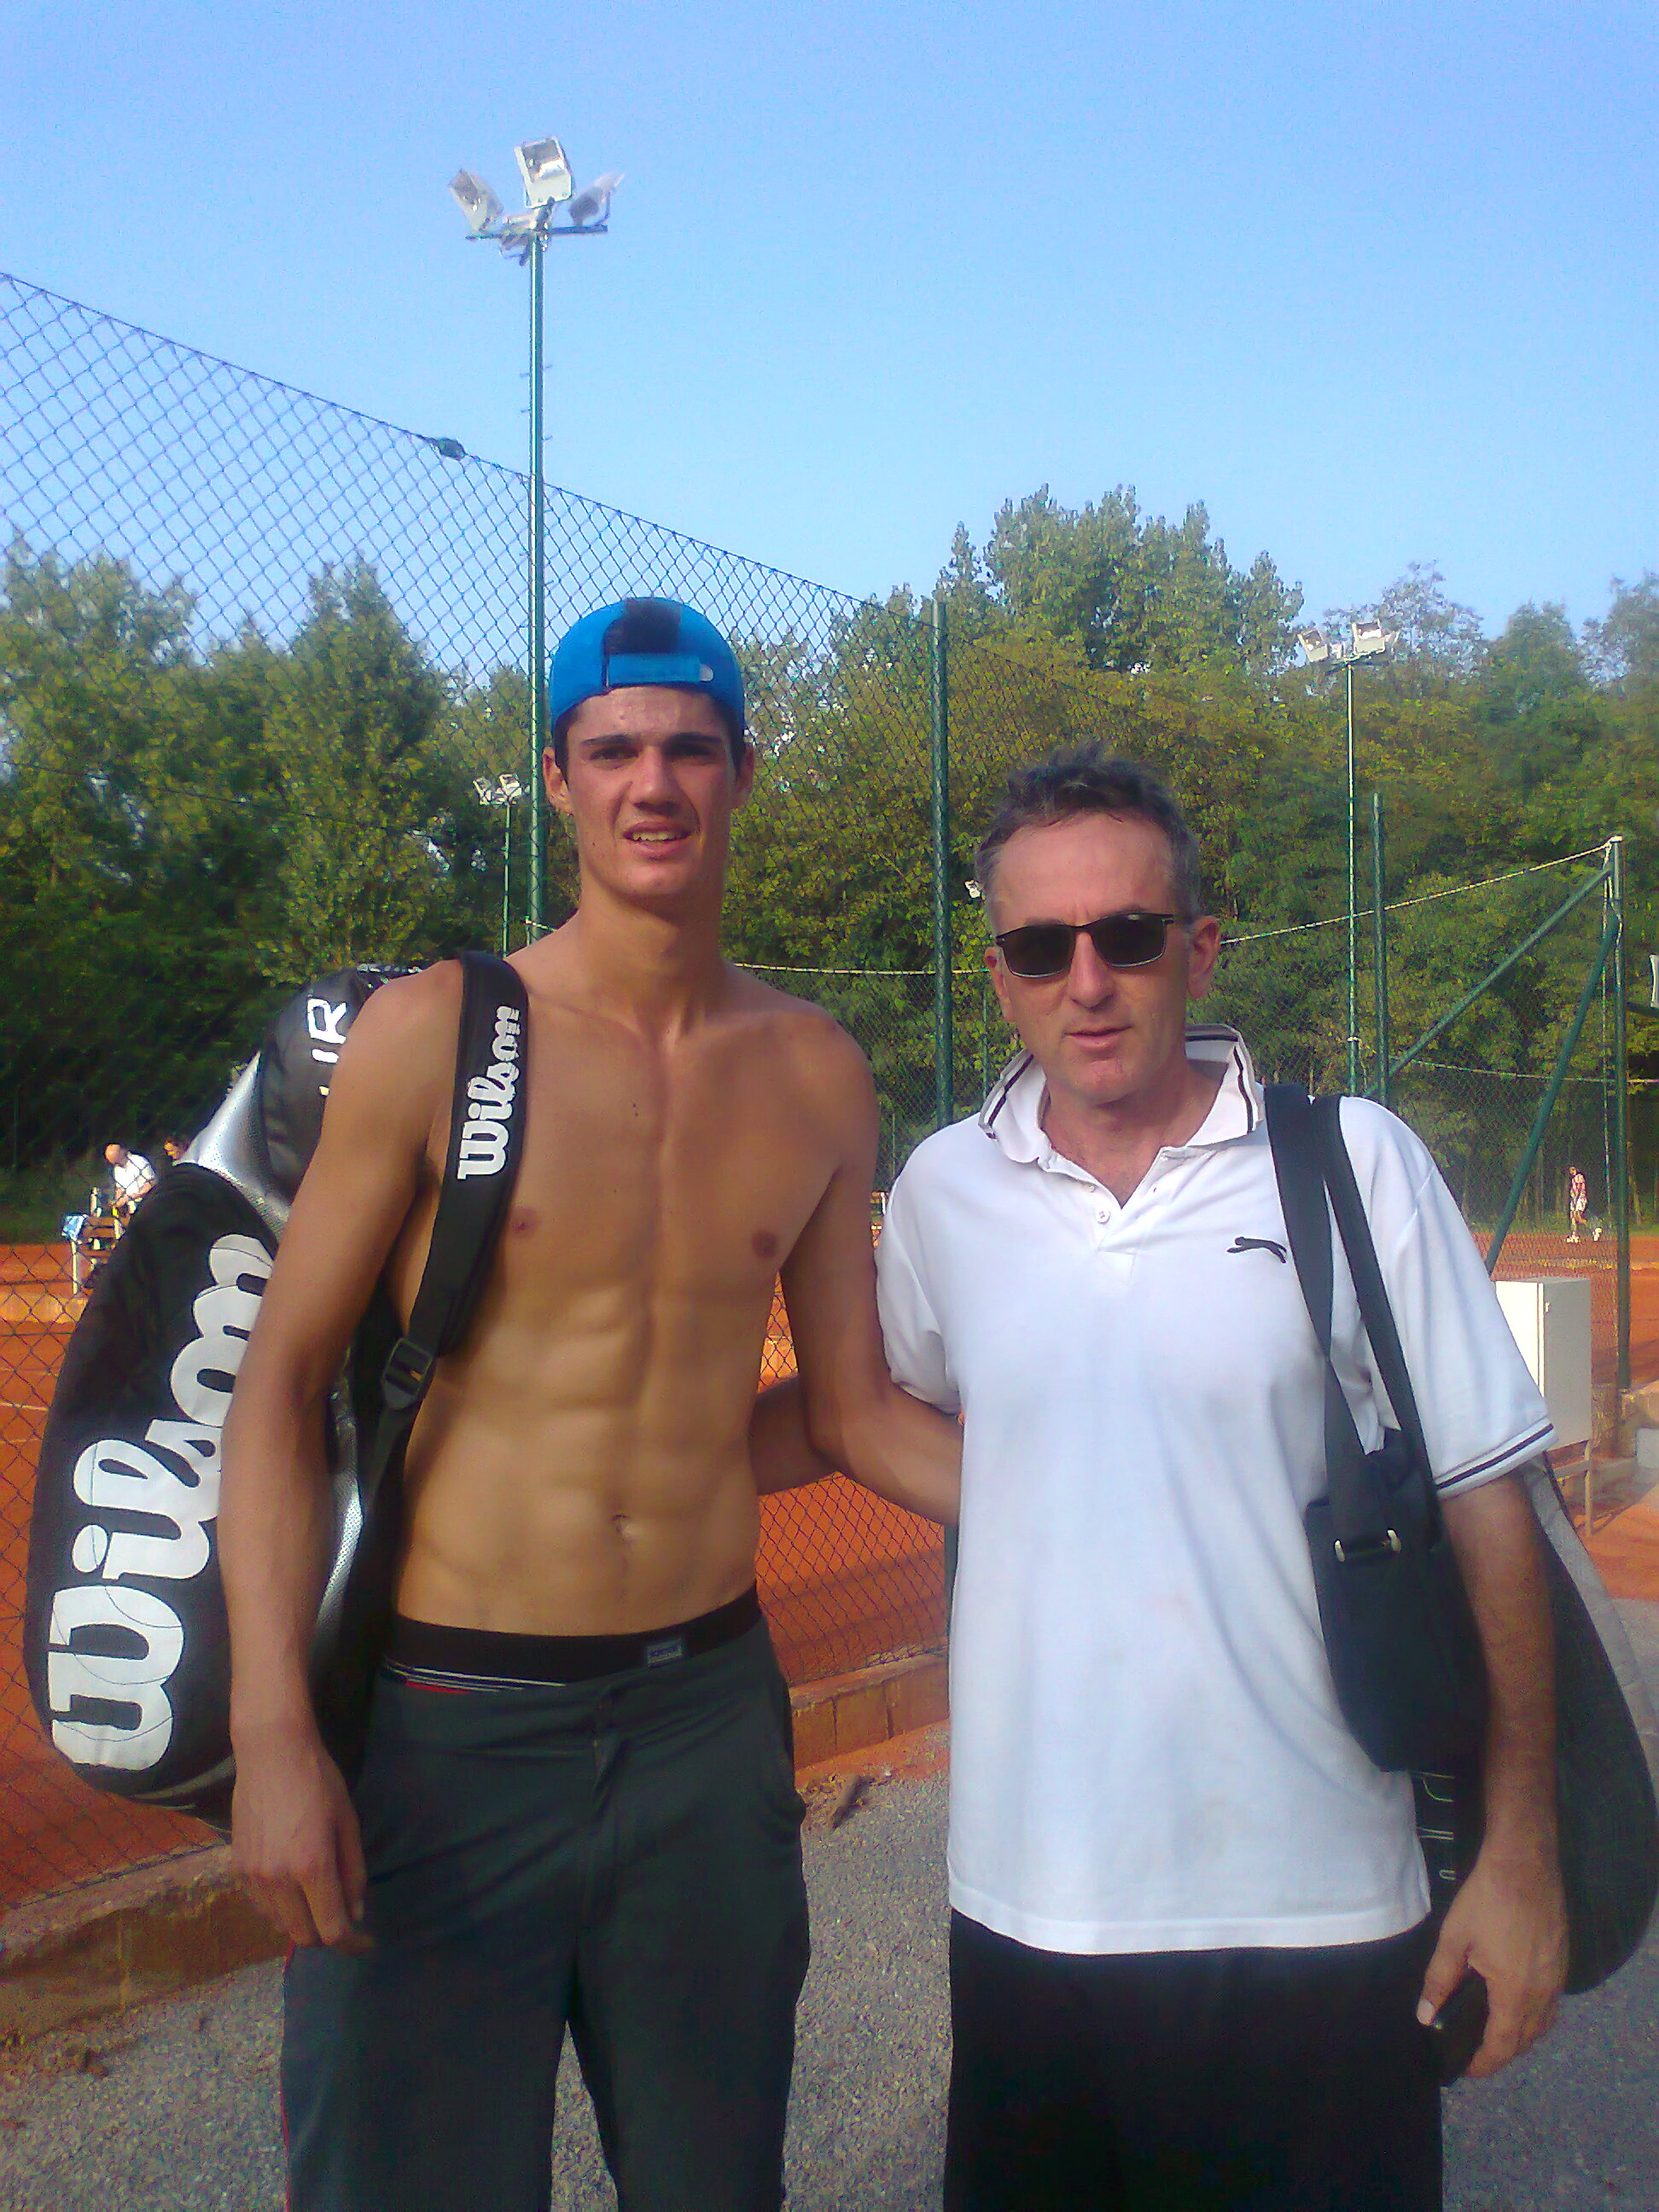 Tenis Trener Beograd